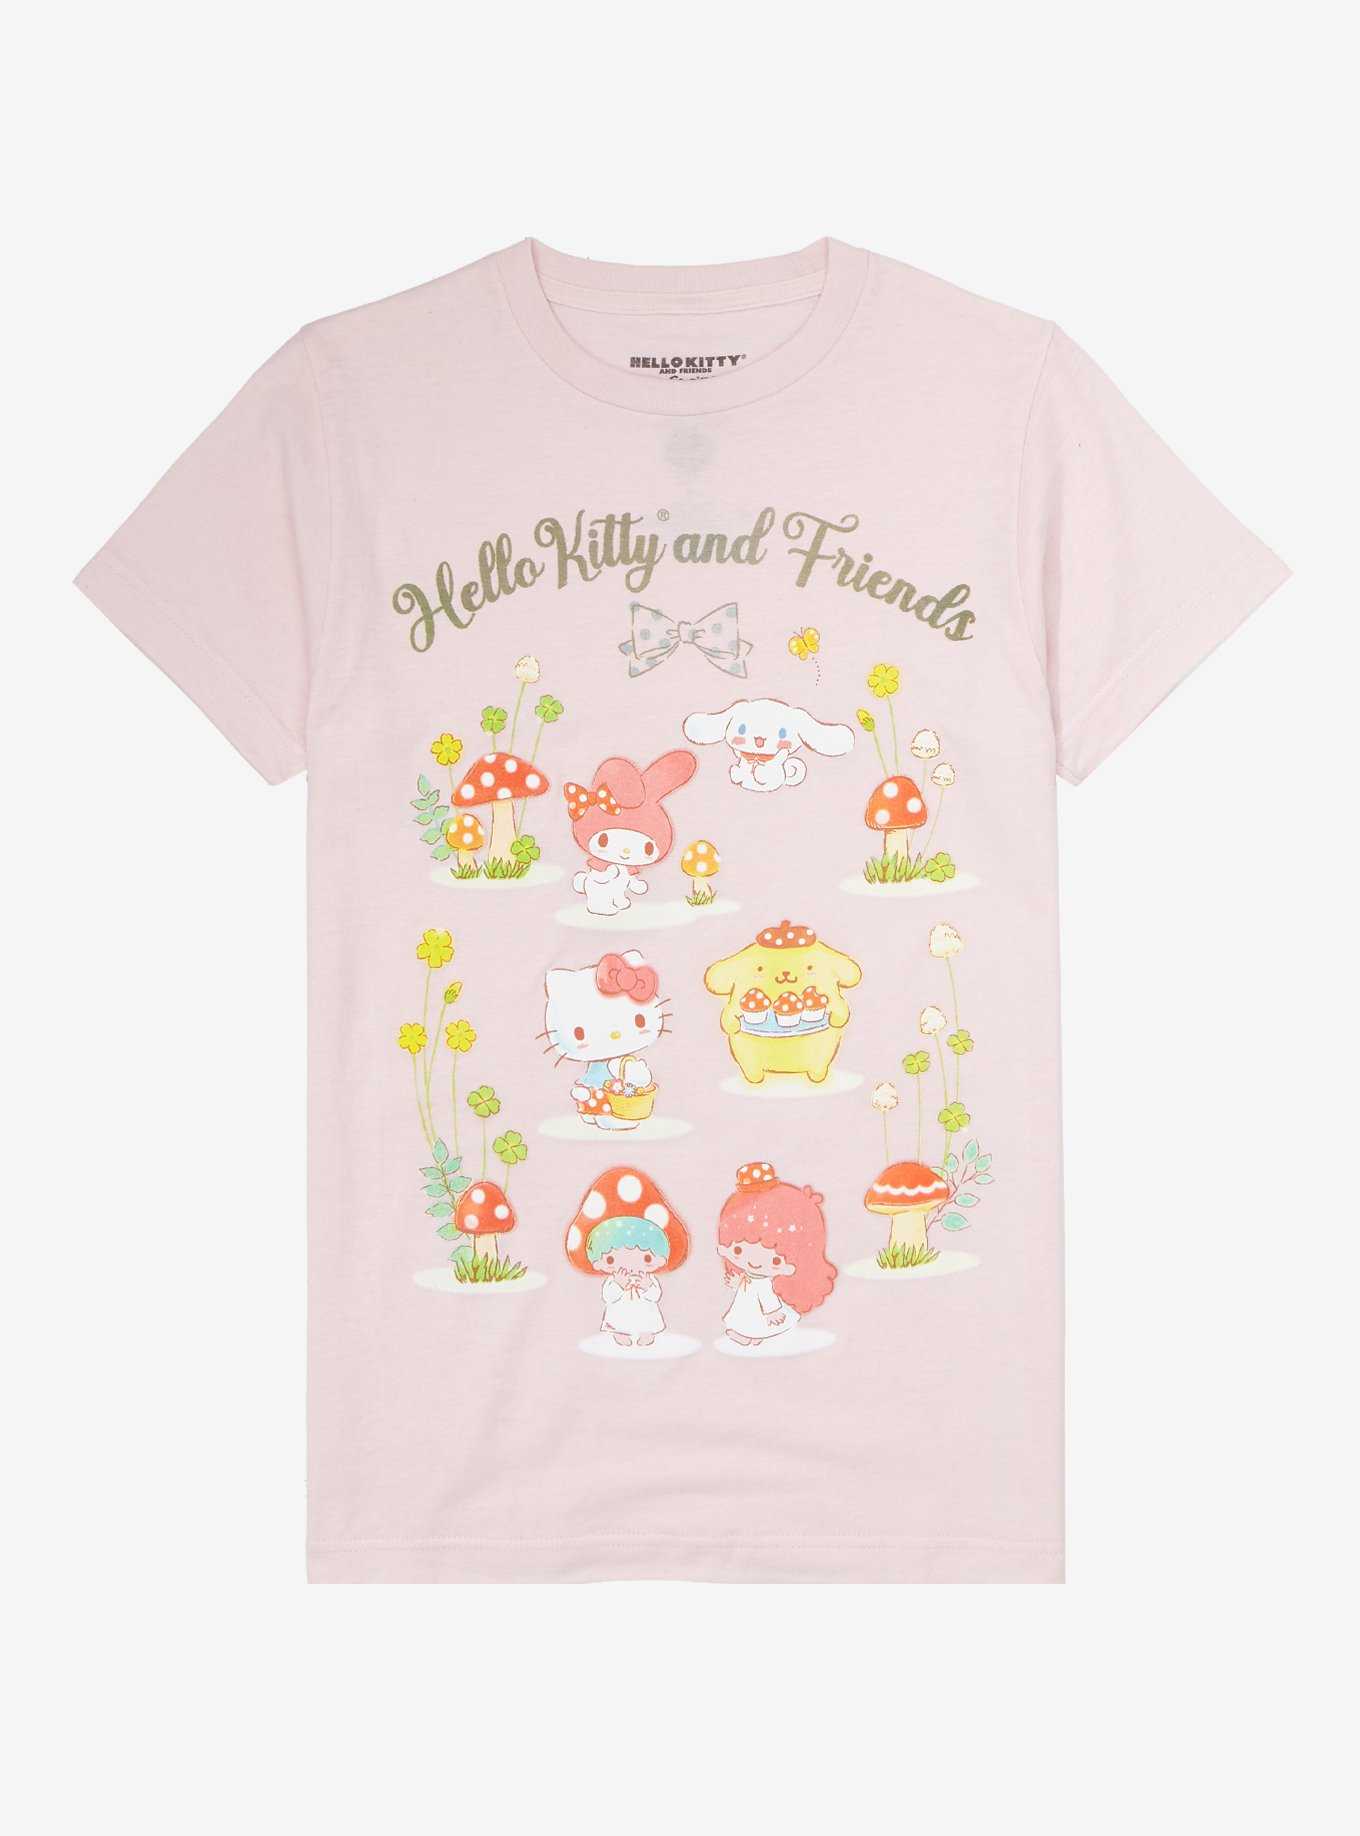 🤍INSTOCK🤍 sanrio graphic tees (t-shirt tshirt top cute